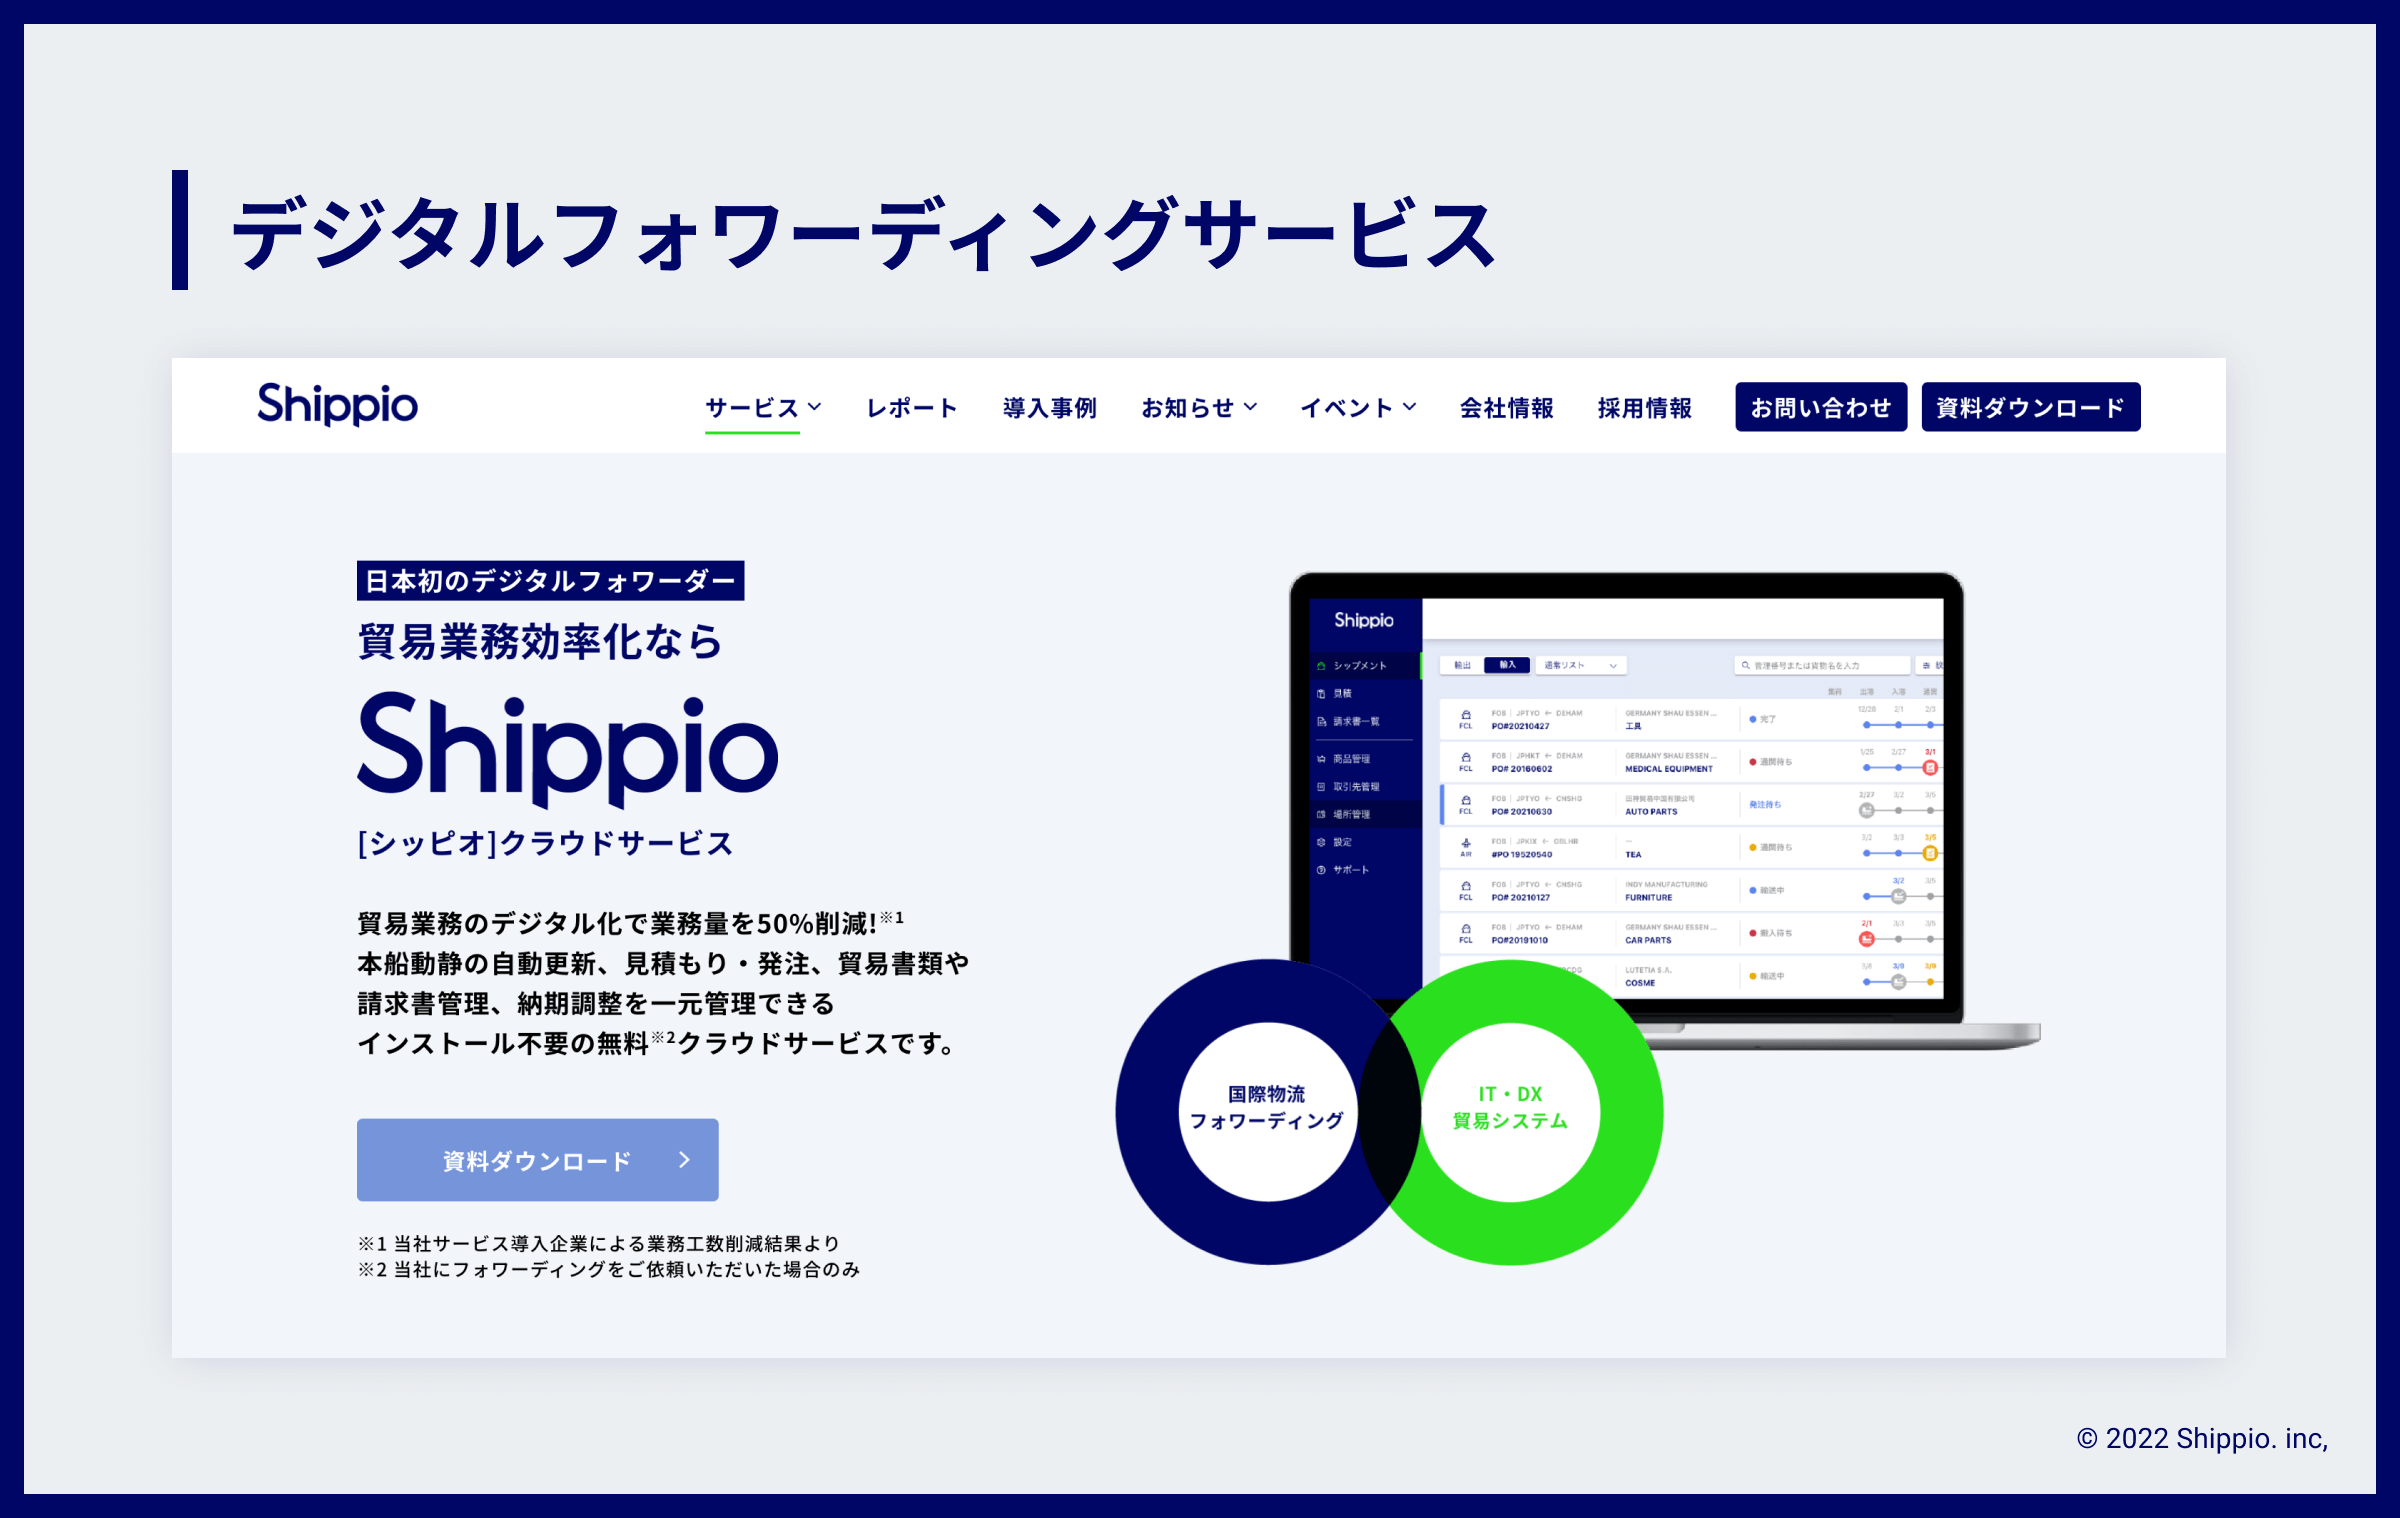 「デジタルフォワーディングサービス」の文字の下に、ShippioのLP画像が載っている。